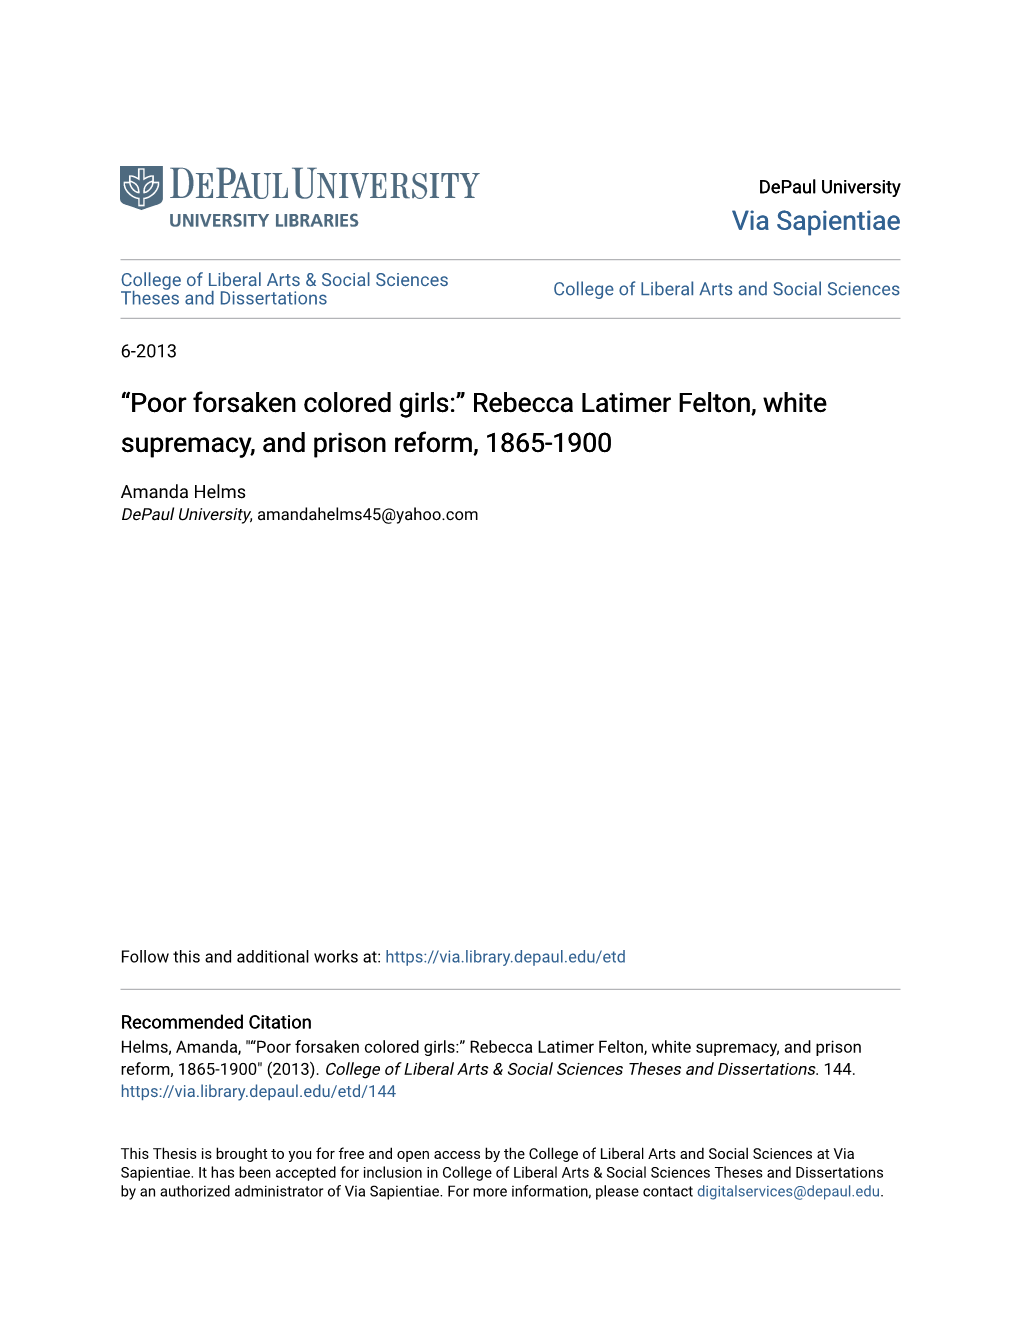 Rebecca Latimer Felton, White Supremacy, and Prison Reform, 1865-1900